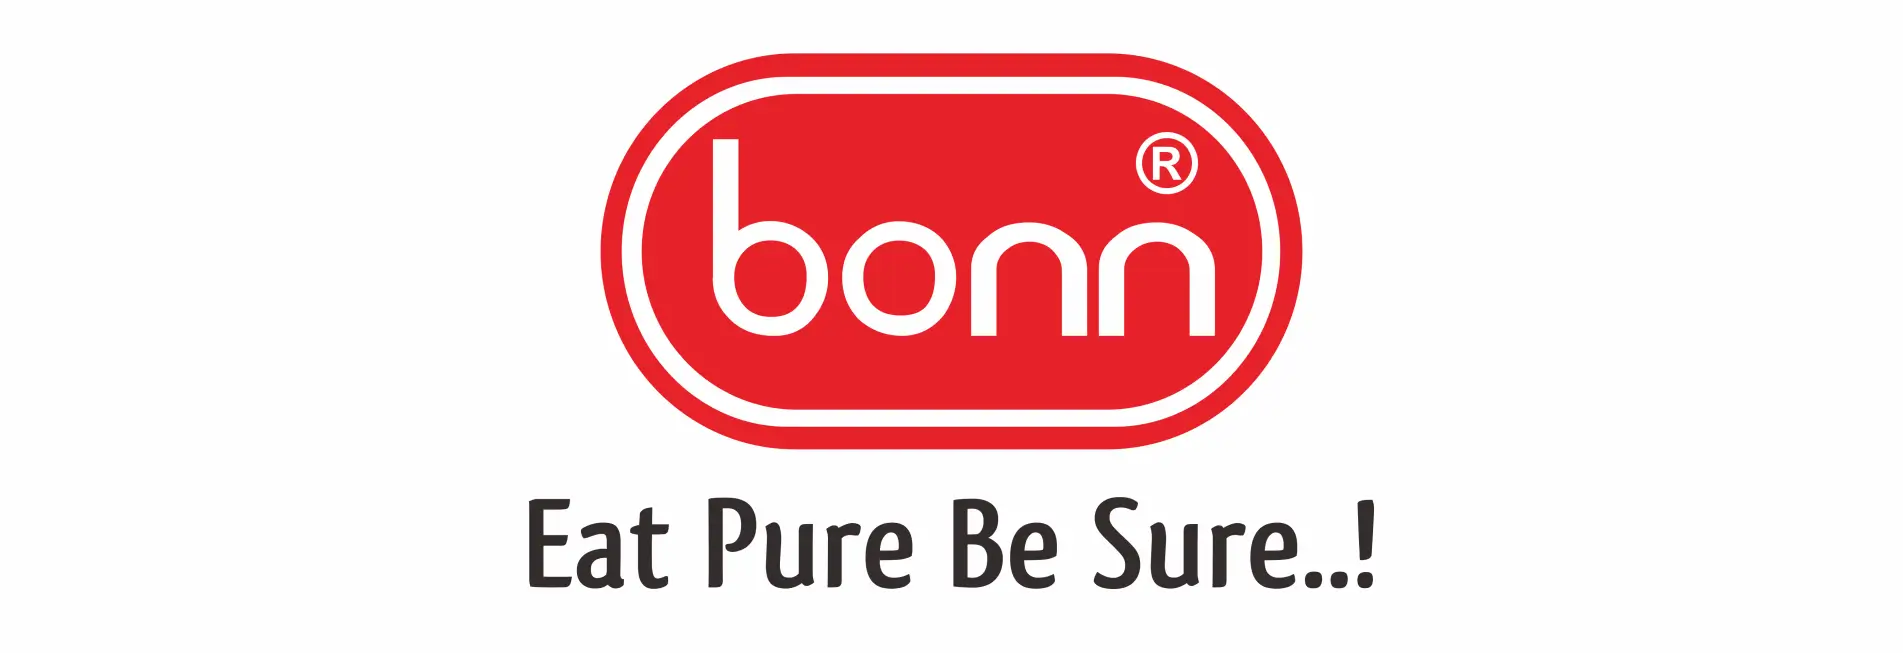 Bonn logo